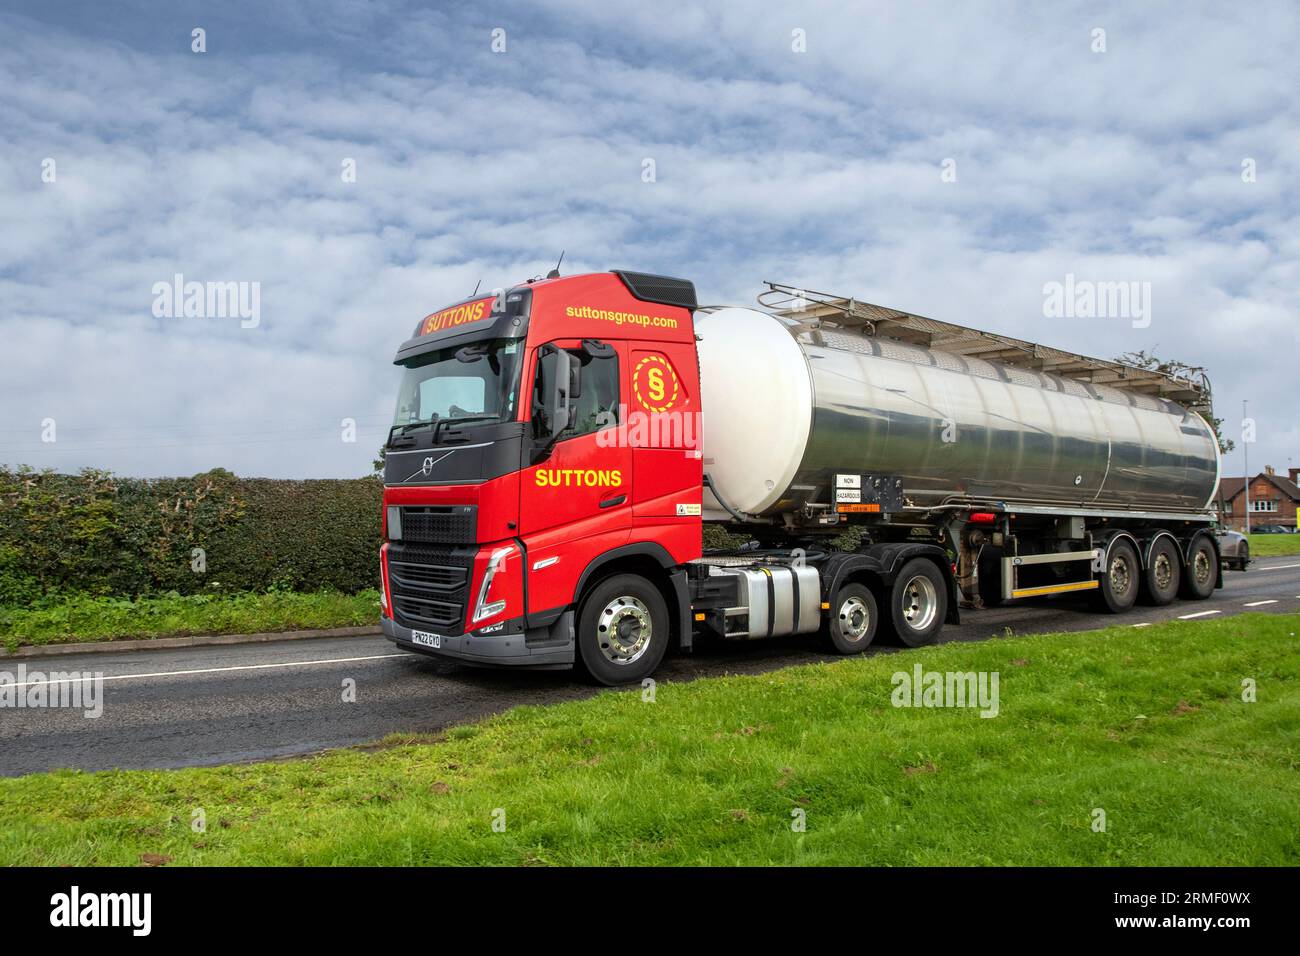 Suttons Group Haulage camions de livraison, camion, transport, camion, transporteur de marchandises, véhicule Volvo, poids lourd de l'industrie européenne du transport commercial, voyageant sur les routes rurales à Congleton, Royaume-Uni Banque D'Images